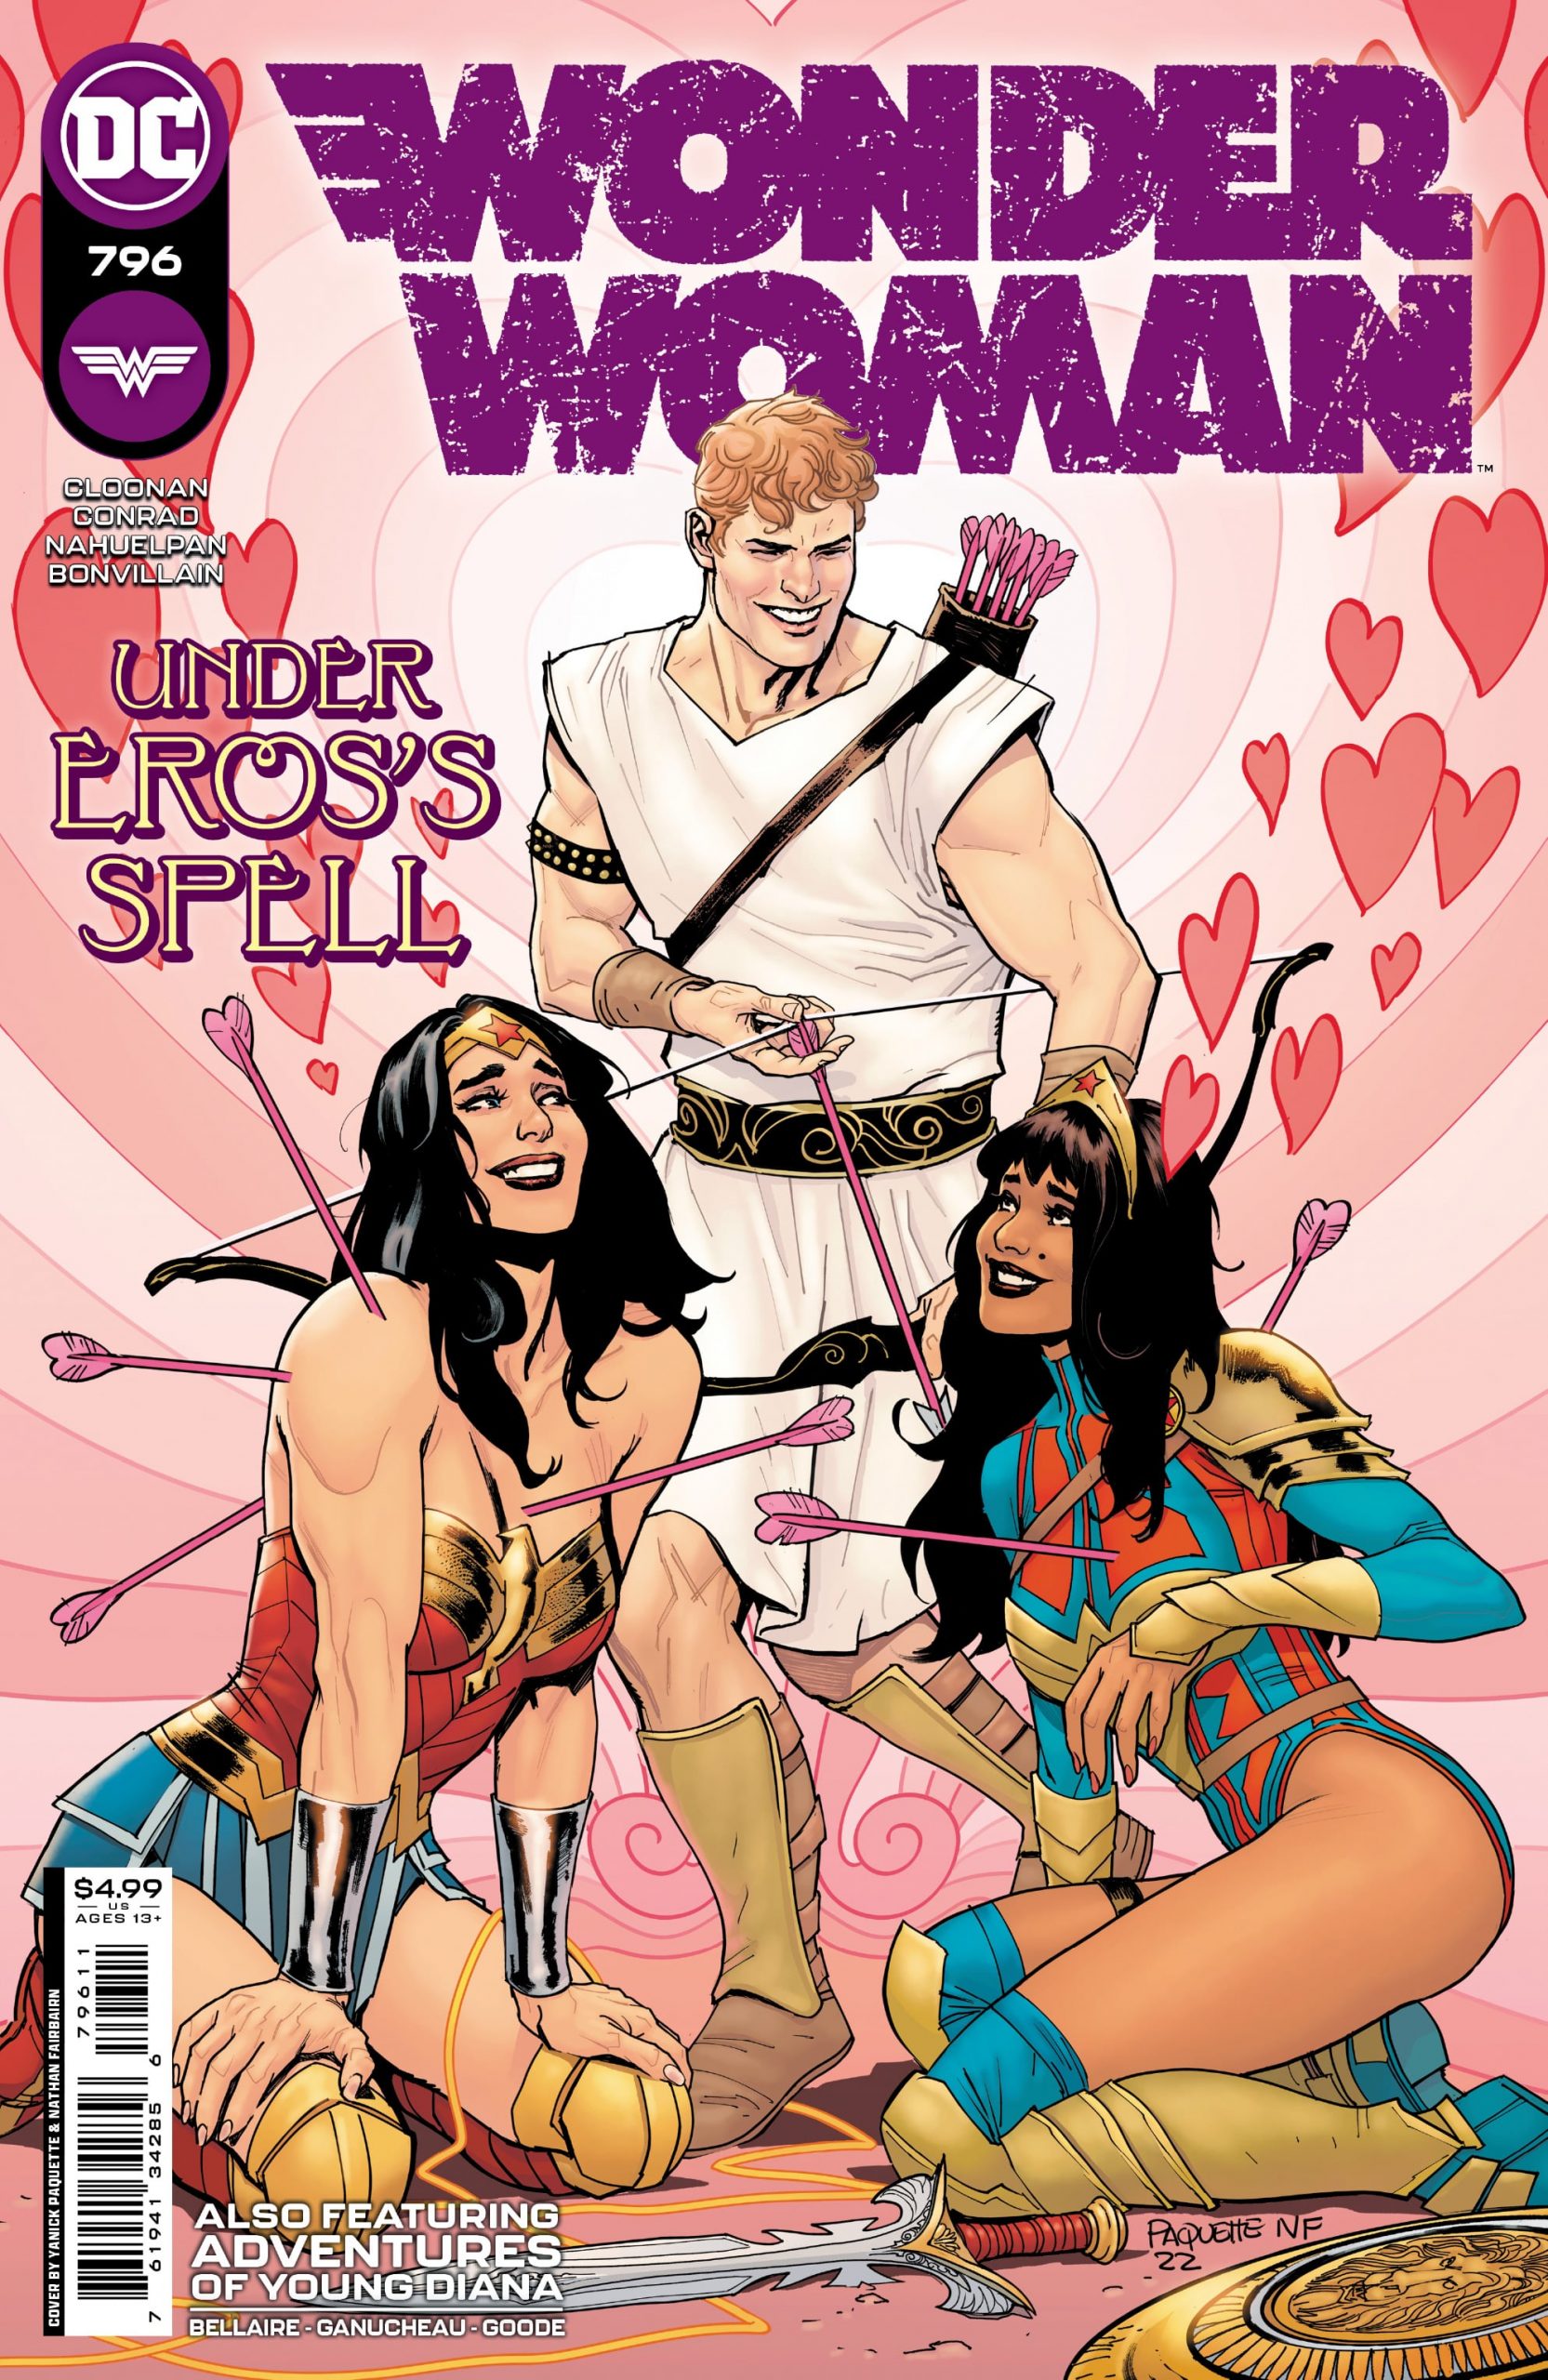 DC Preview: Wonder Woman #796